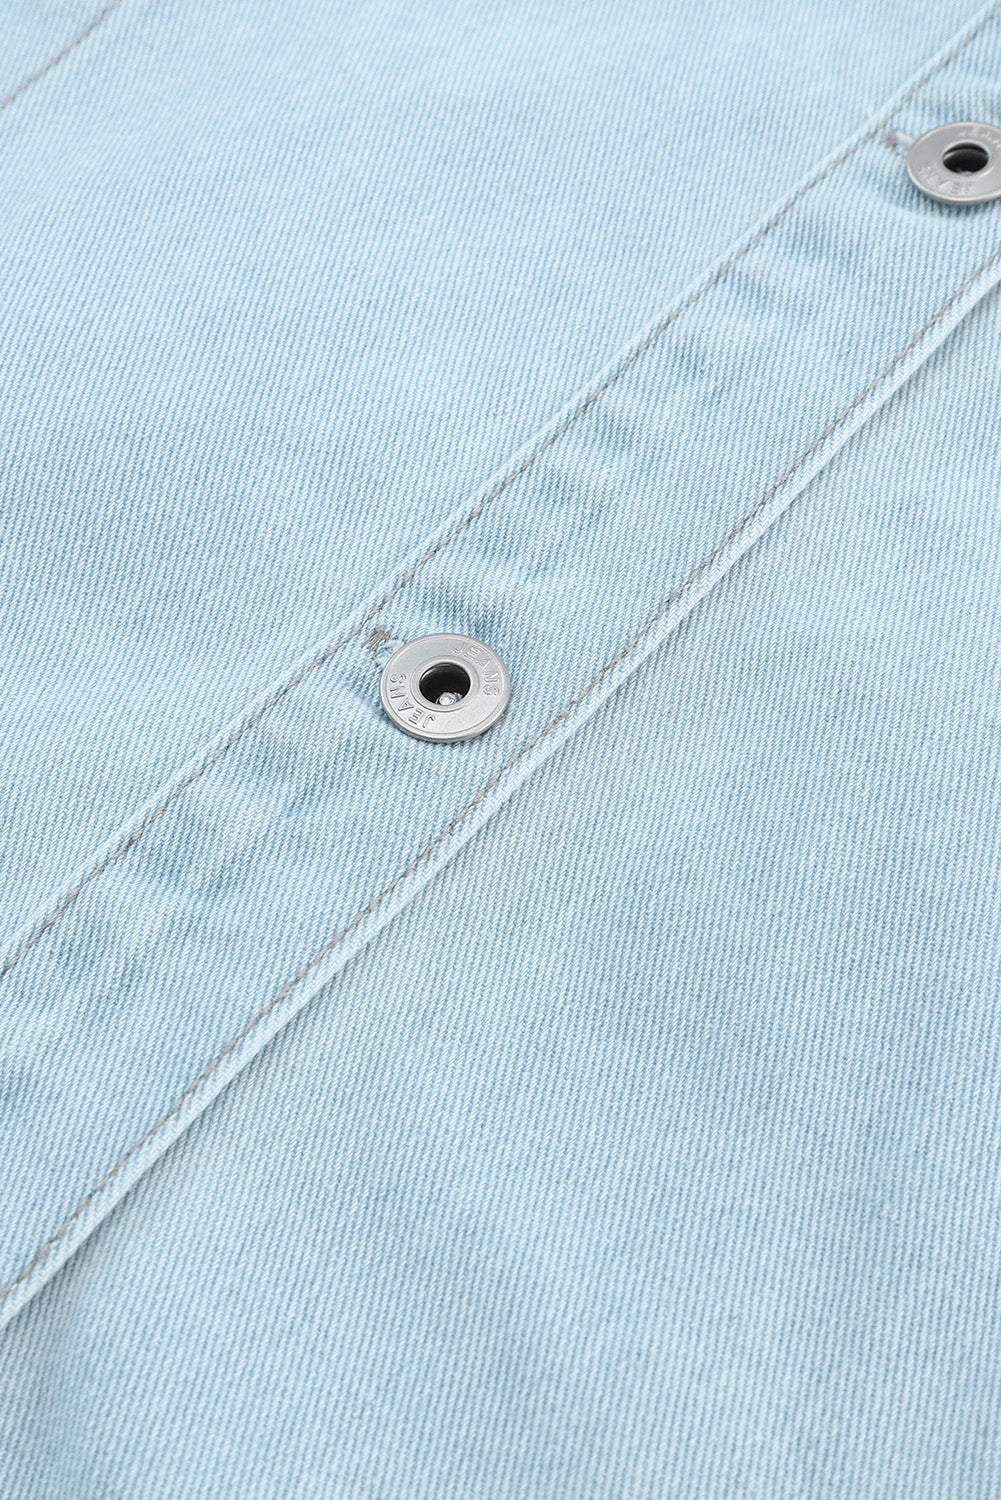 Himmelblaue, geknöpfte Jeansjacke mit unbearbeitetem Saum und Pattentaschen